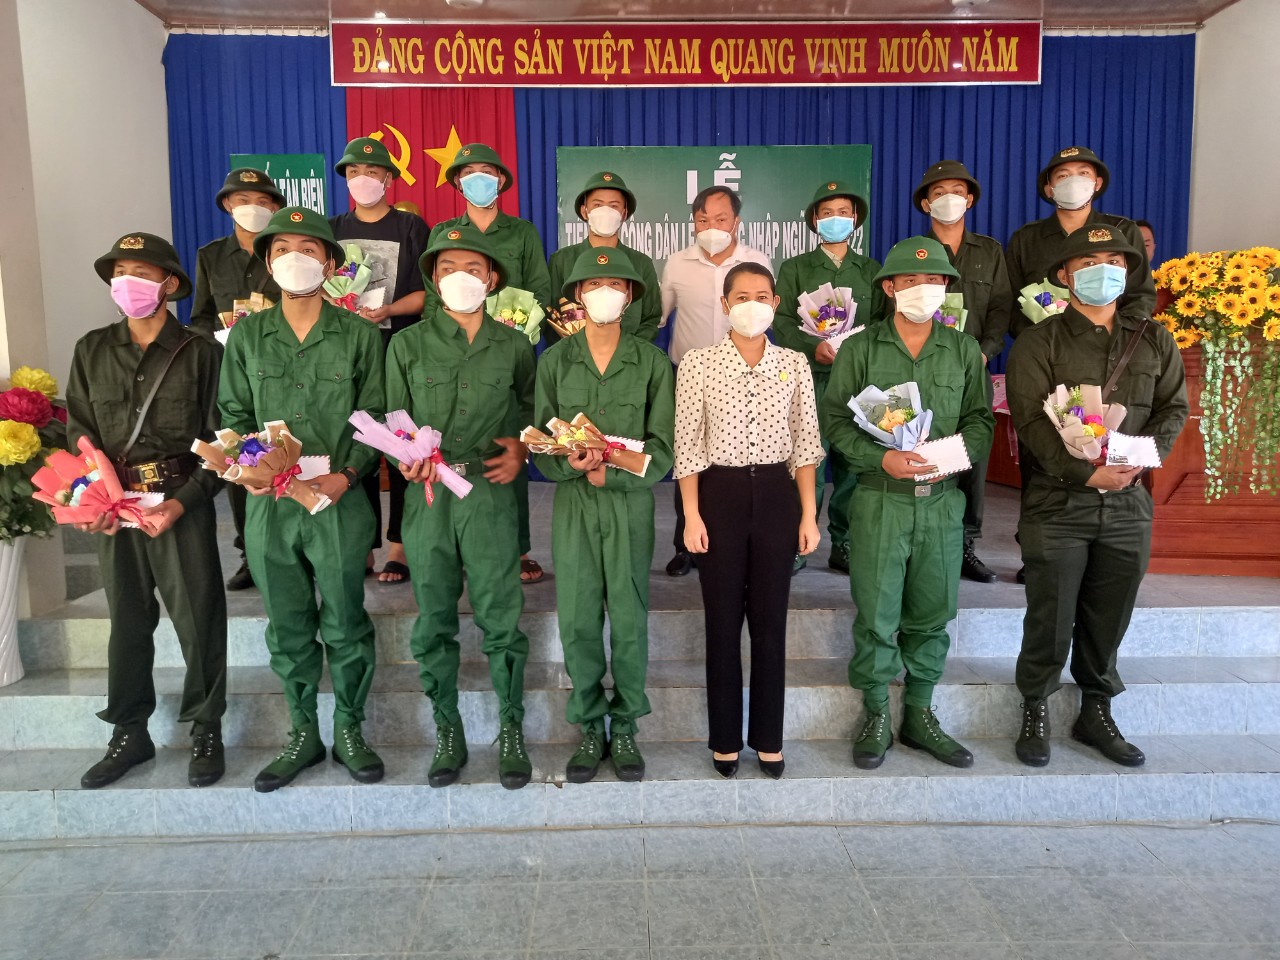 Ảnh các vị lãnh đạo thị trấn Tân Biên tặng hoa và Qua cho các thanh niên.jpg